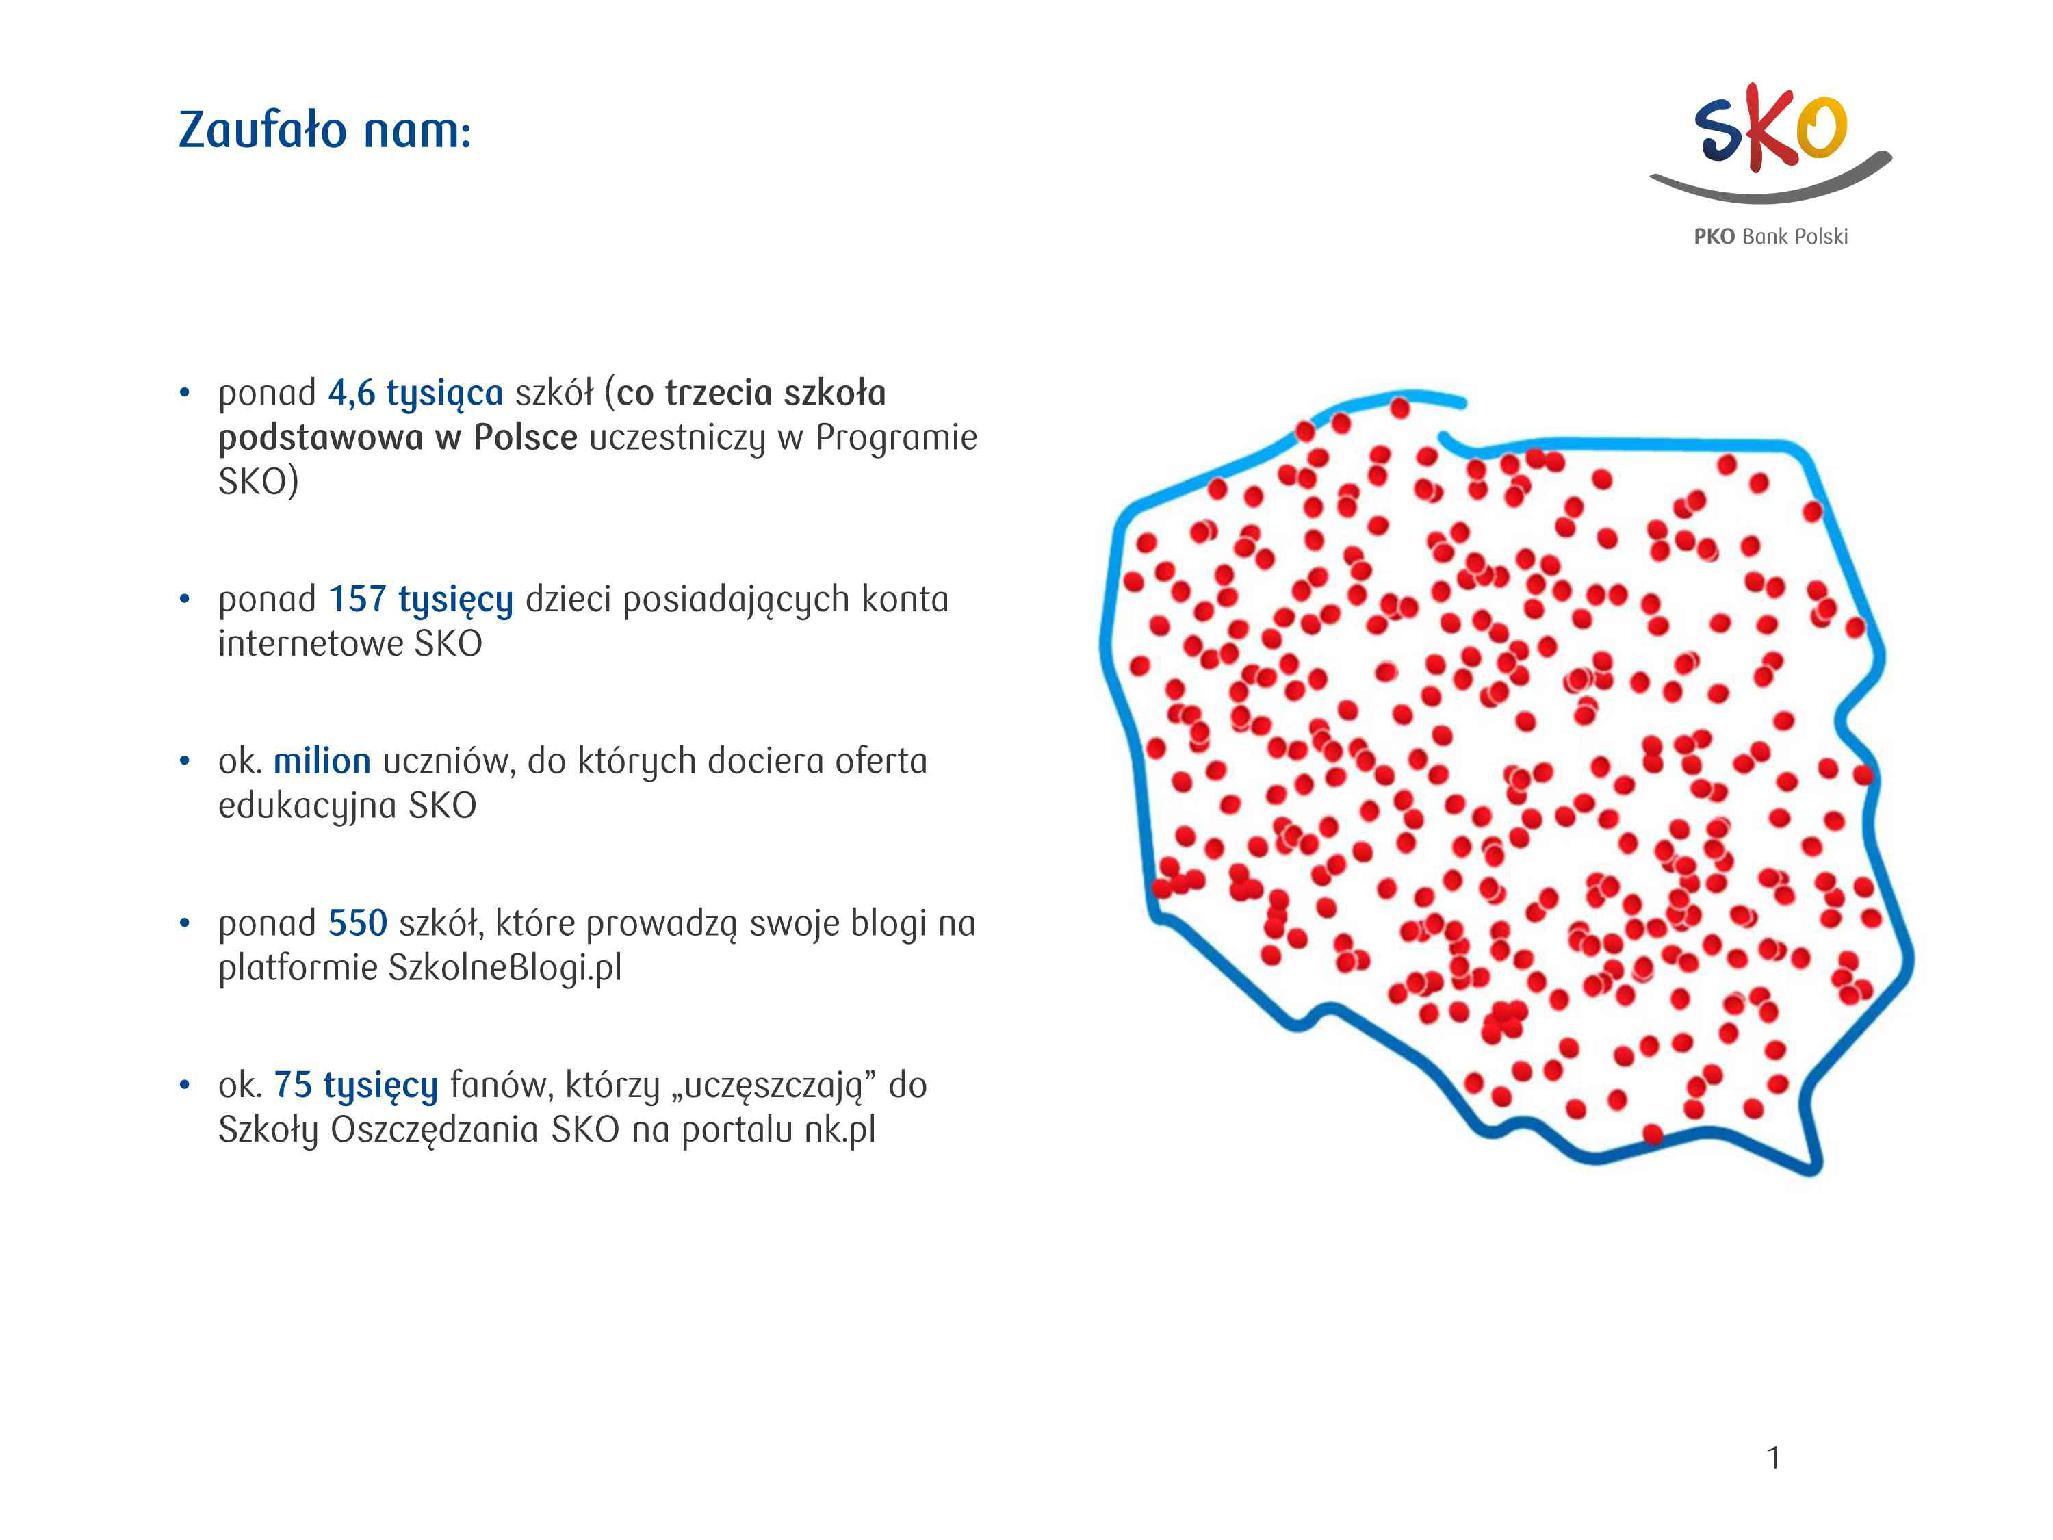 SKO PKO Banku Polskiego to najstarszy, największy i najnowocześniejszy program edukacji finansowej w Polsce